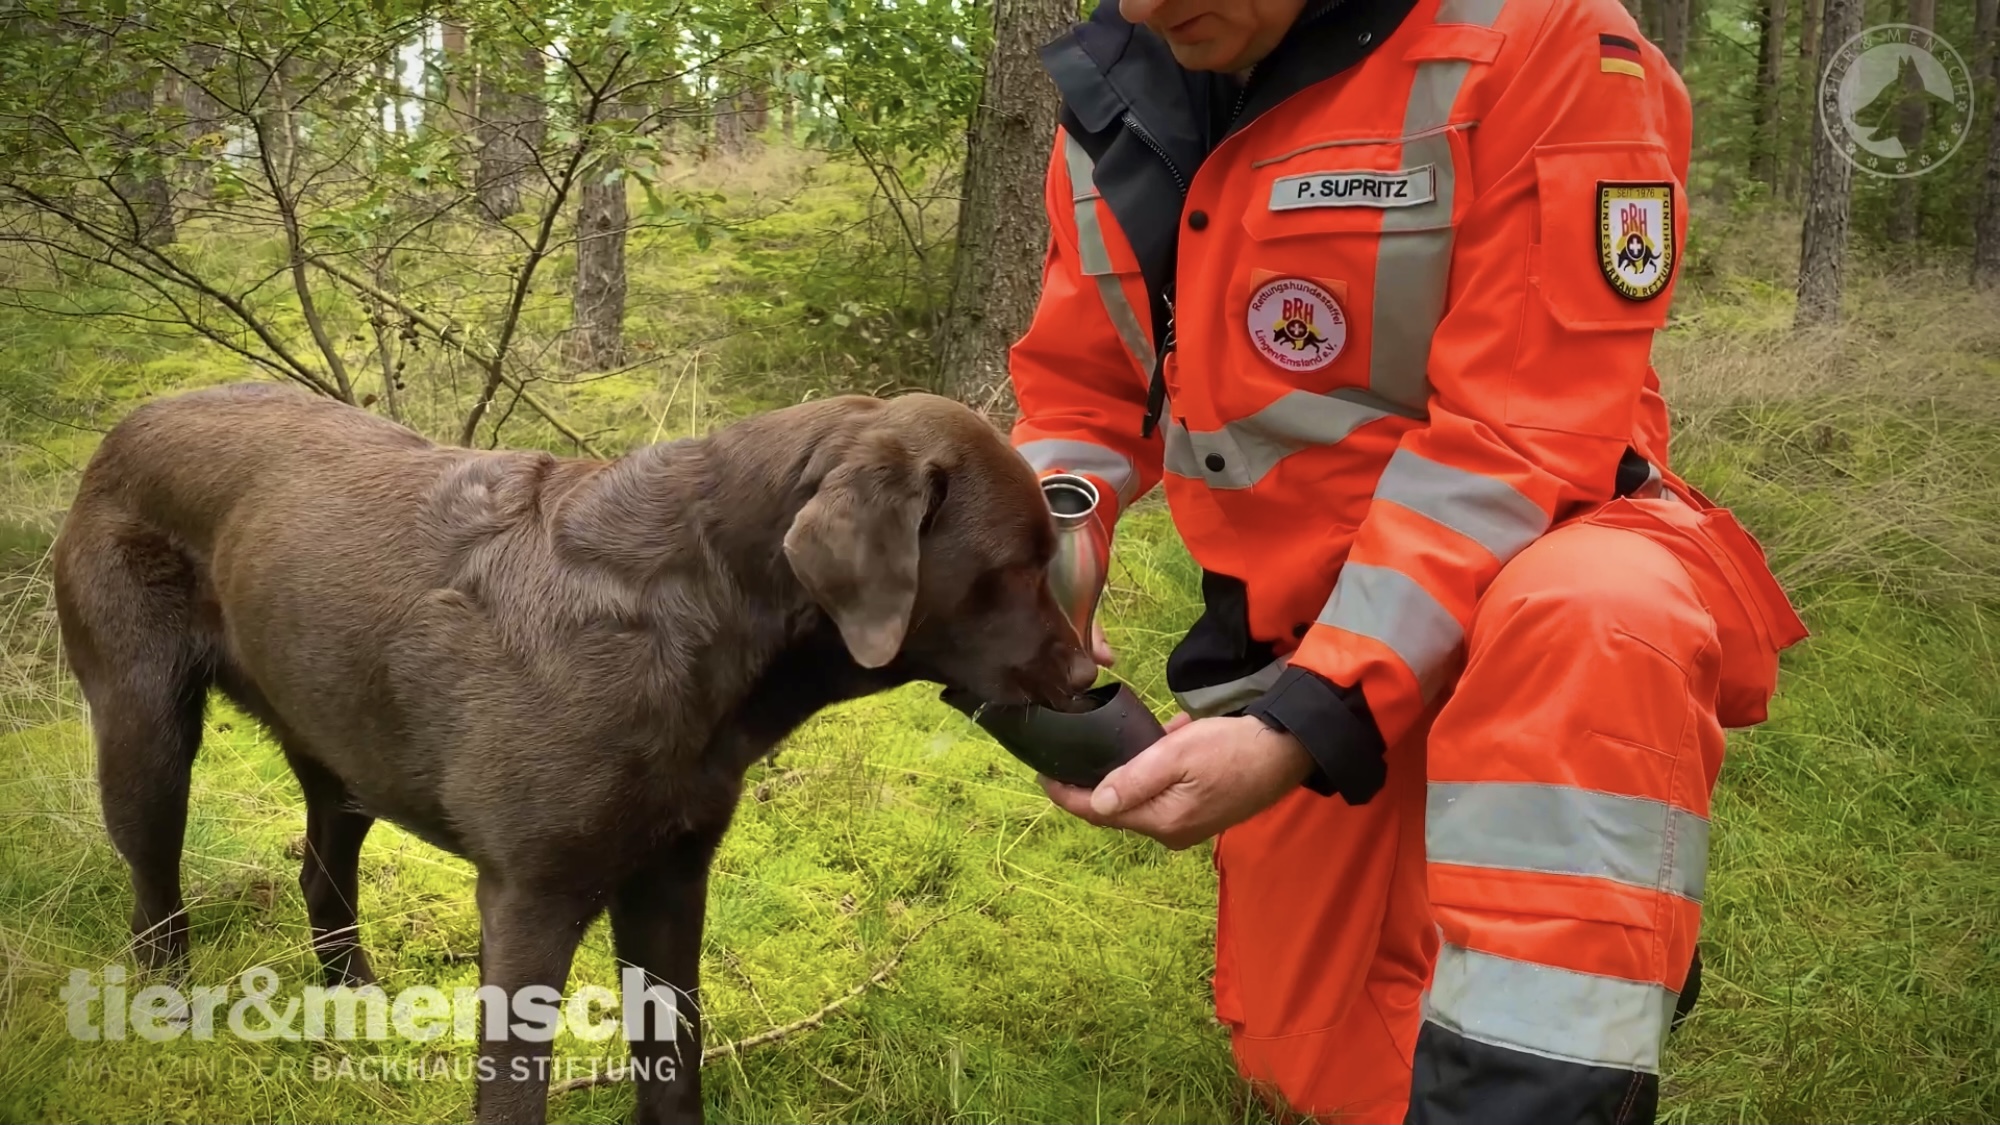 Reportage der Backhaus Stiftung über Rettungshunde